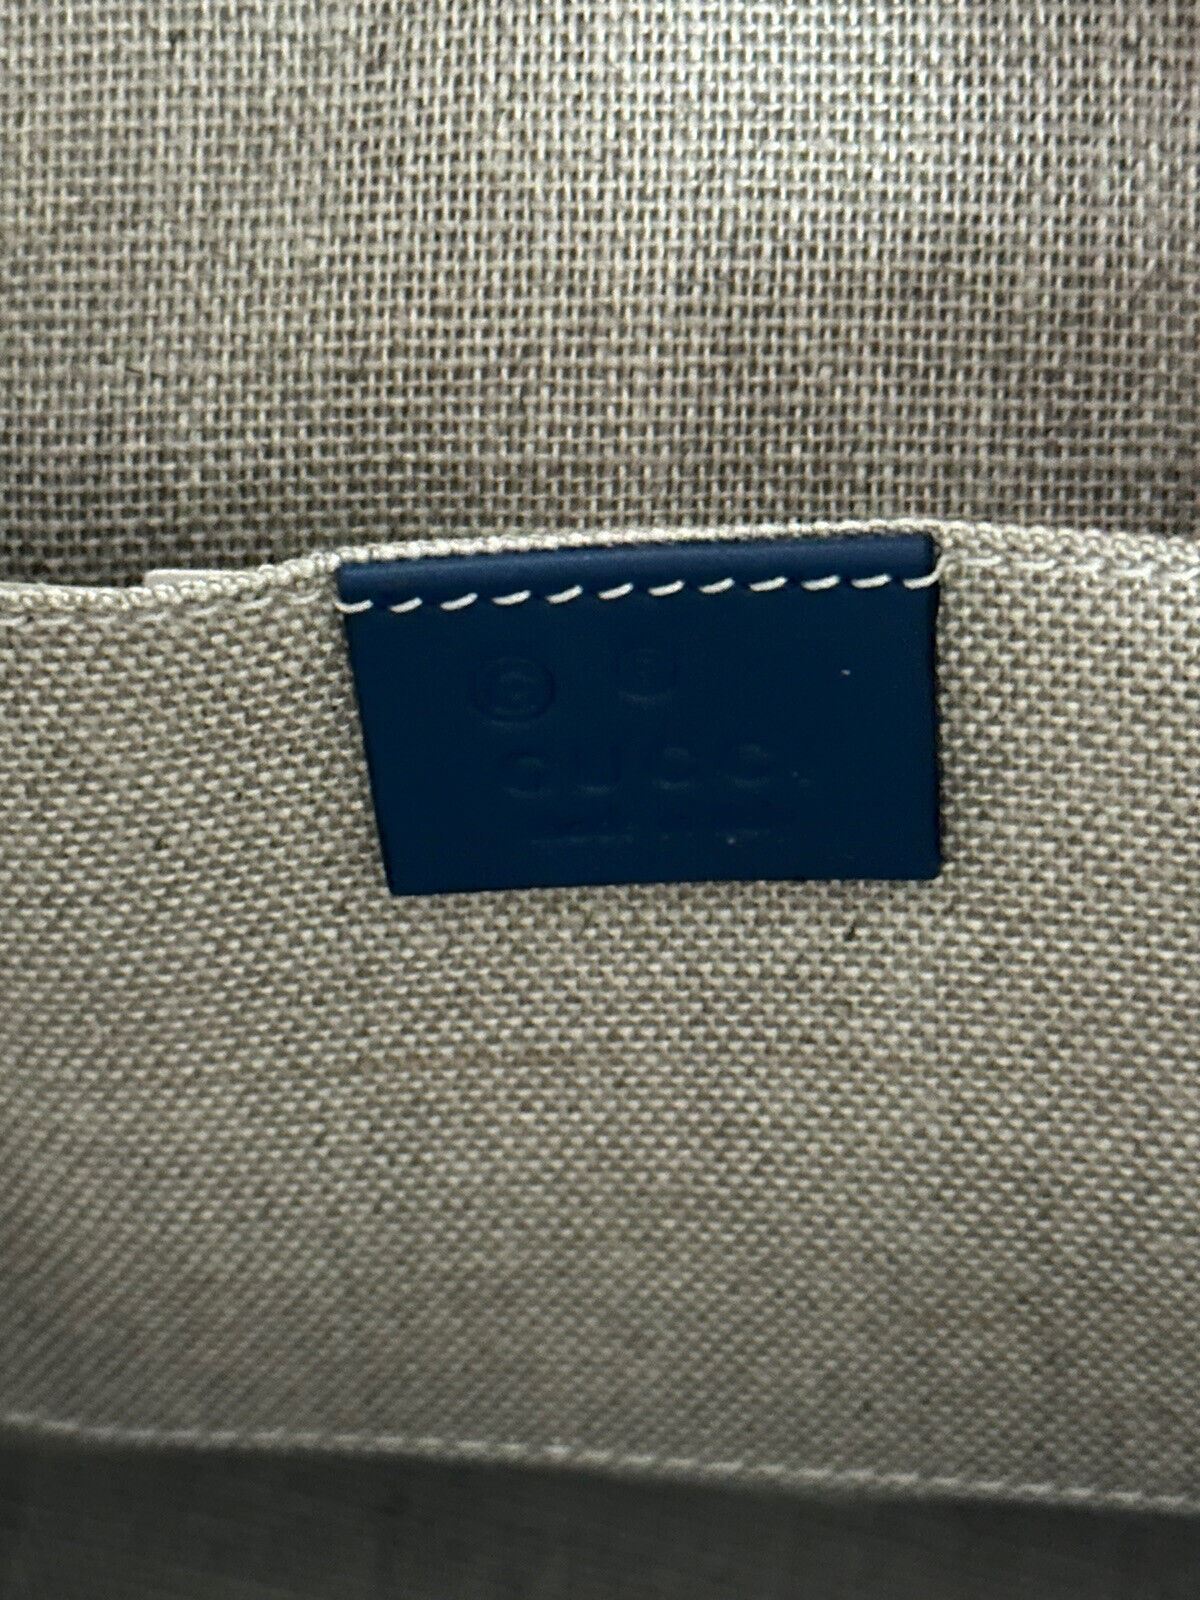 Neue Gucci GG Leder GG Microguccissima Monogramm Kuppeltasche Blau Hergestellt in Italien 